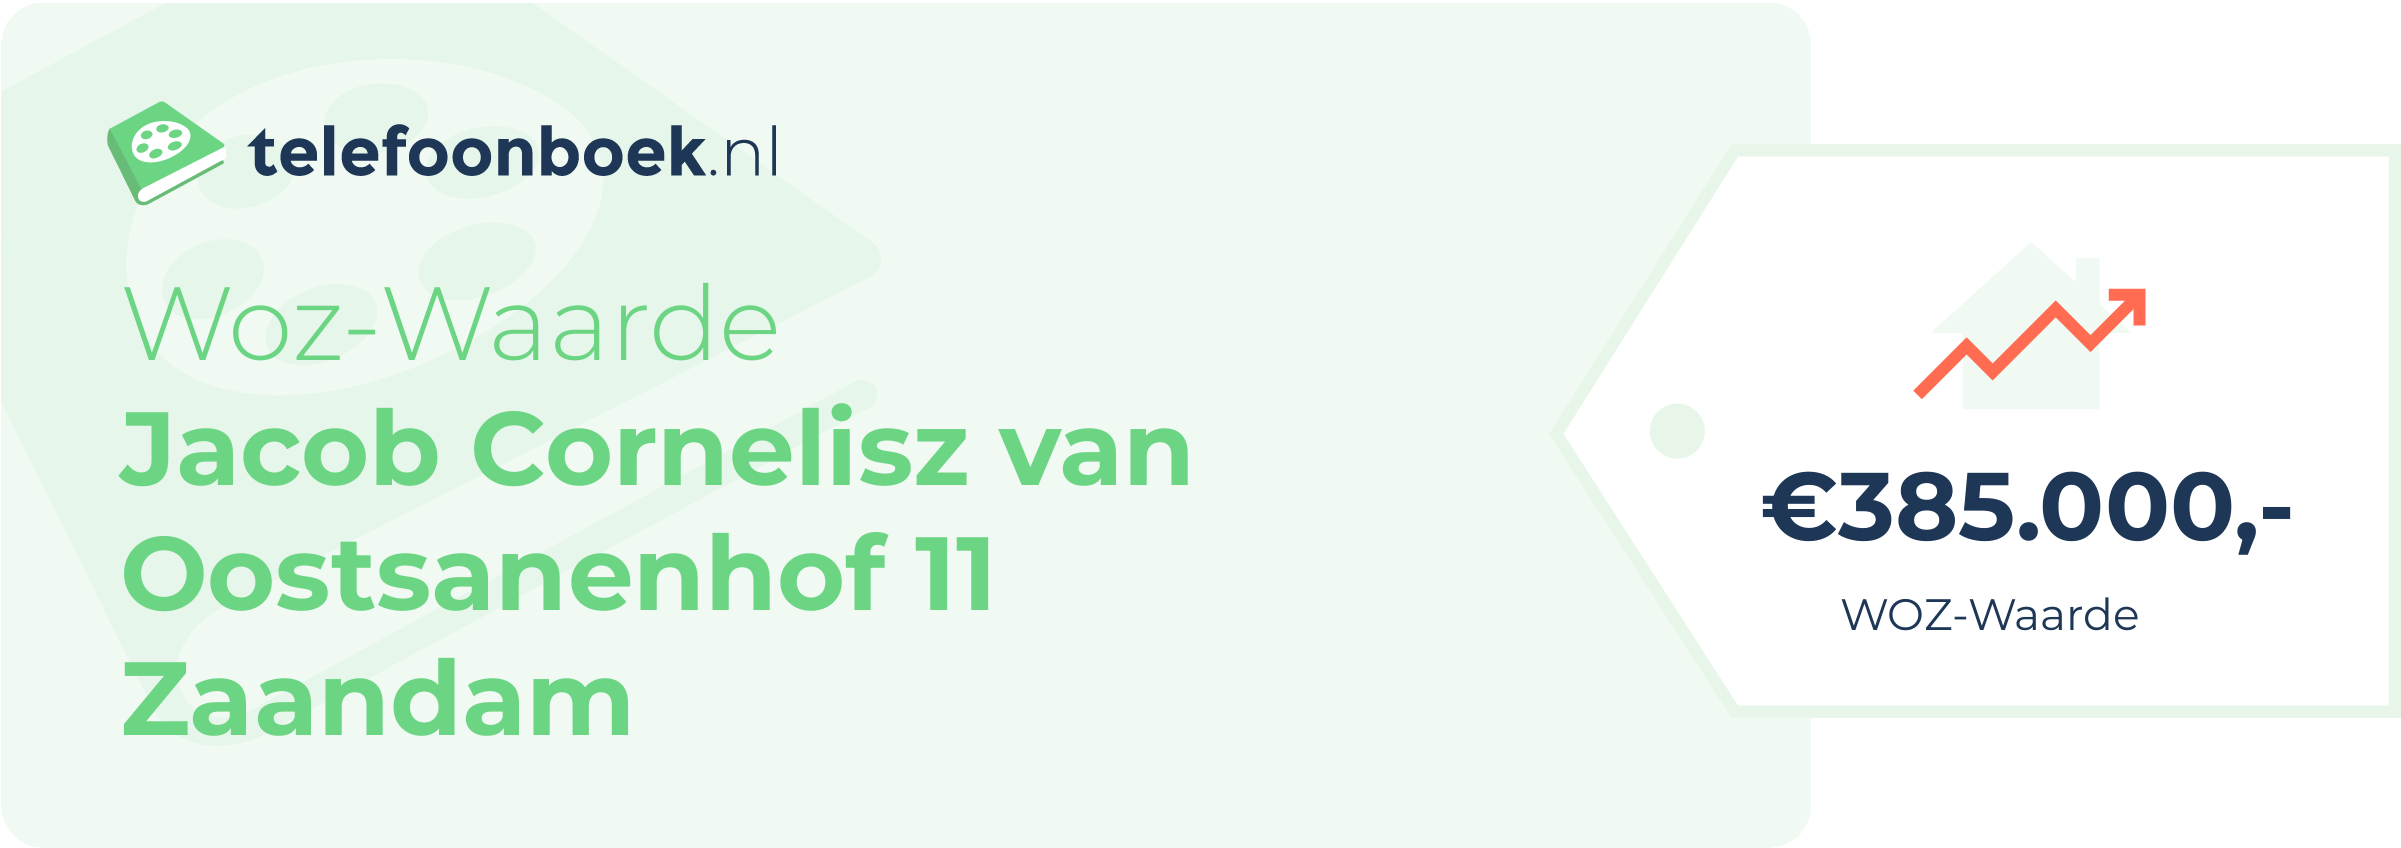 WOZ-waarde Jacob Cornelisz Van Oostsanenhof 11 Zaandam